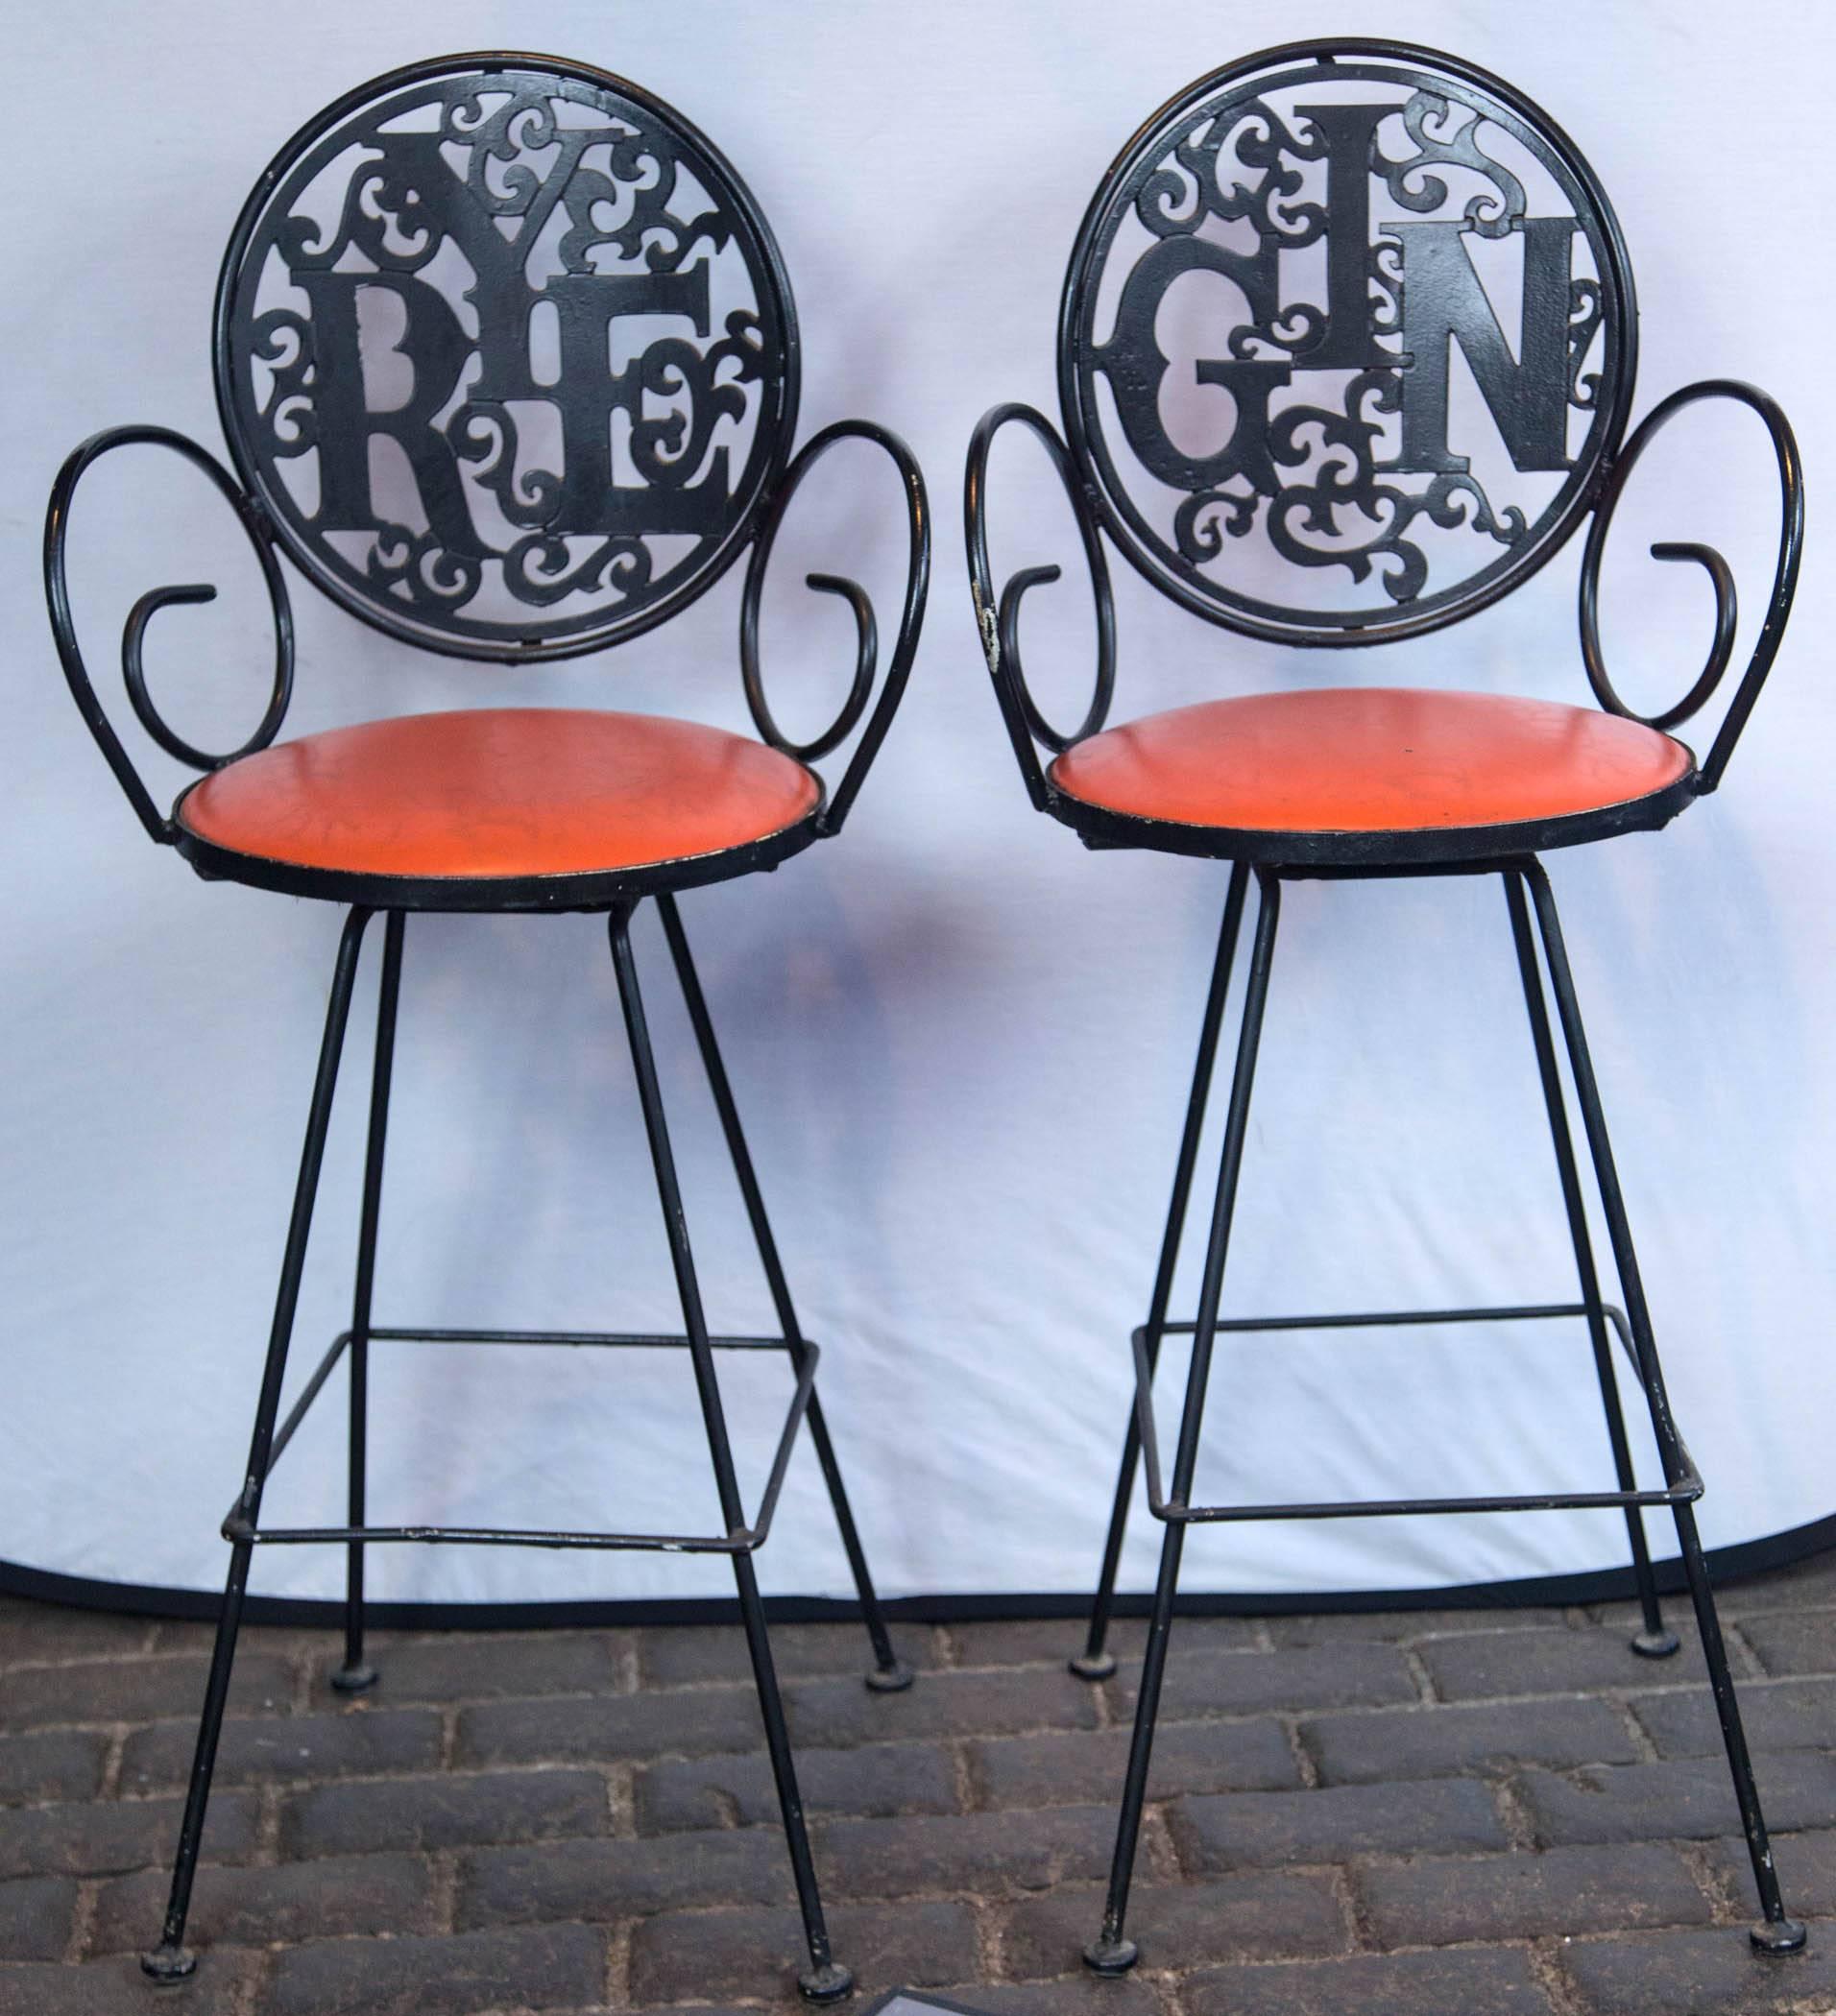 Die swingenden 1960er Jahre! Zwei schmiedeeiserne Hocker aus den 1960er Jahren von Arthur Umanoff, Rye und Gin, mit orangefarbenen Vinylsitzen. Die Sitzhöhe beträgt 29,5 Zoll.